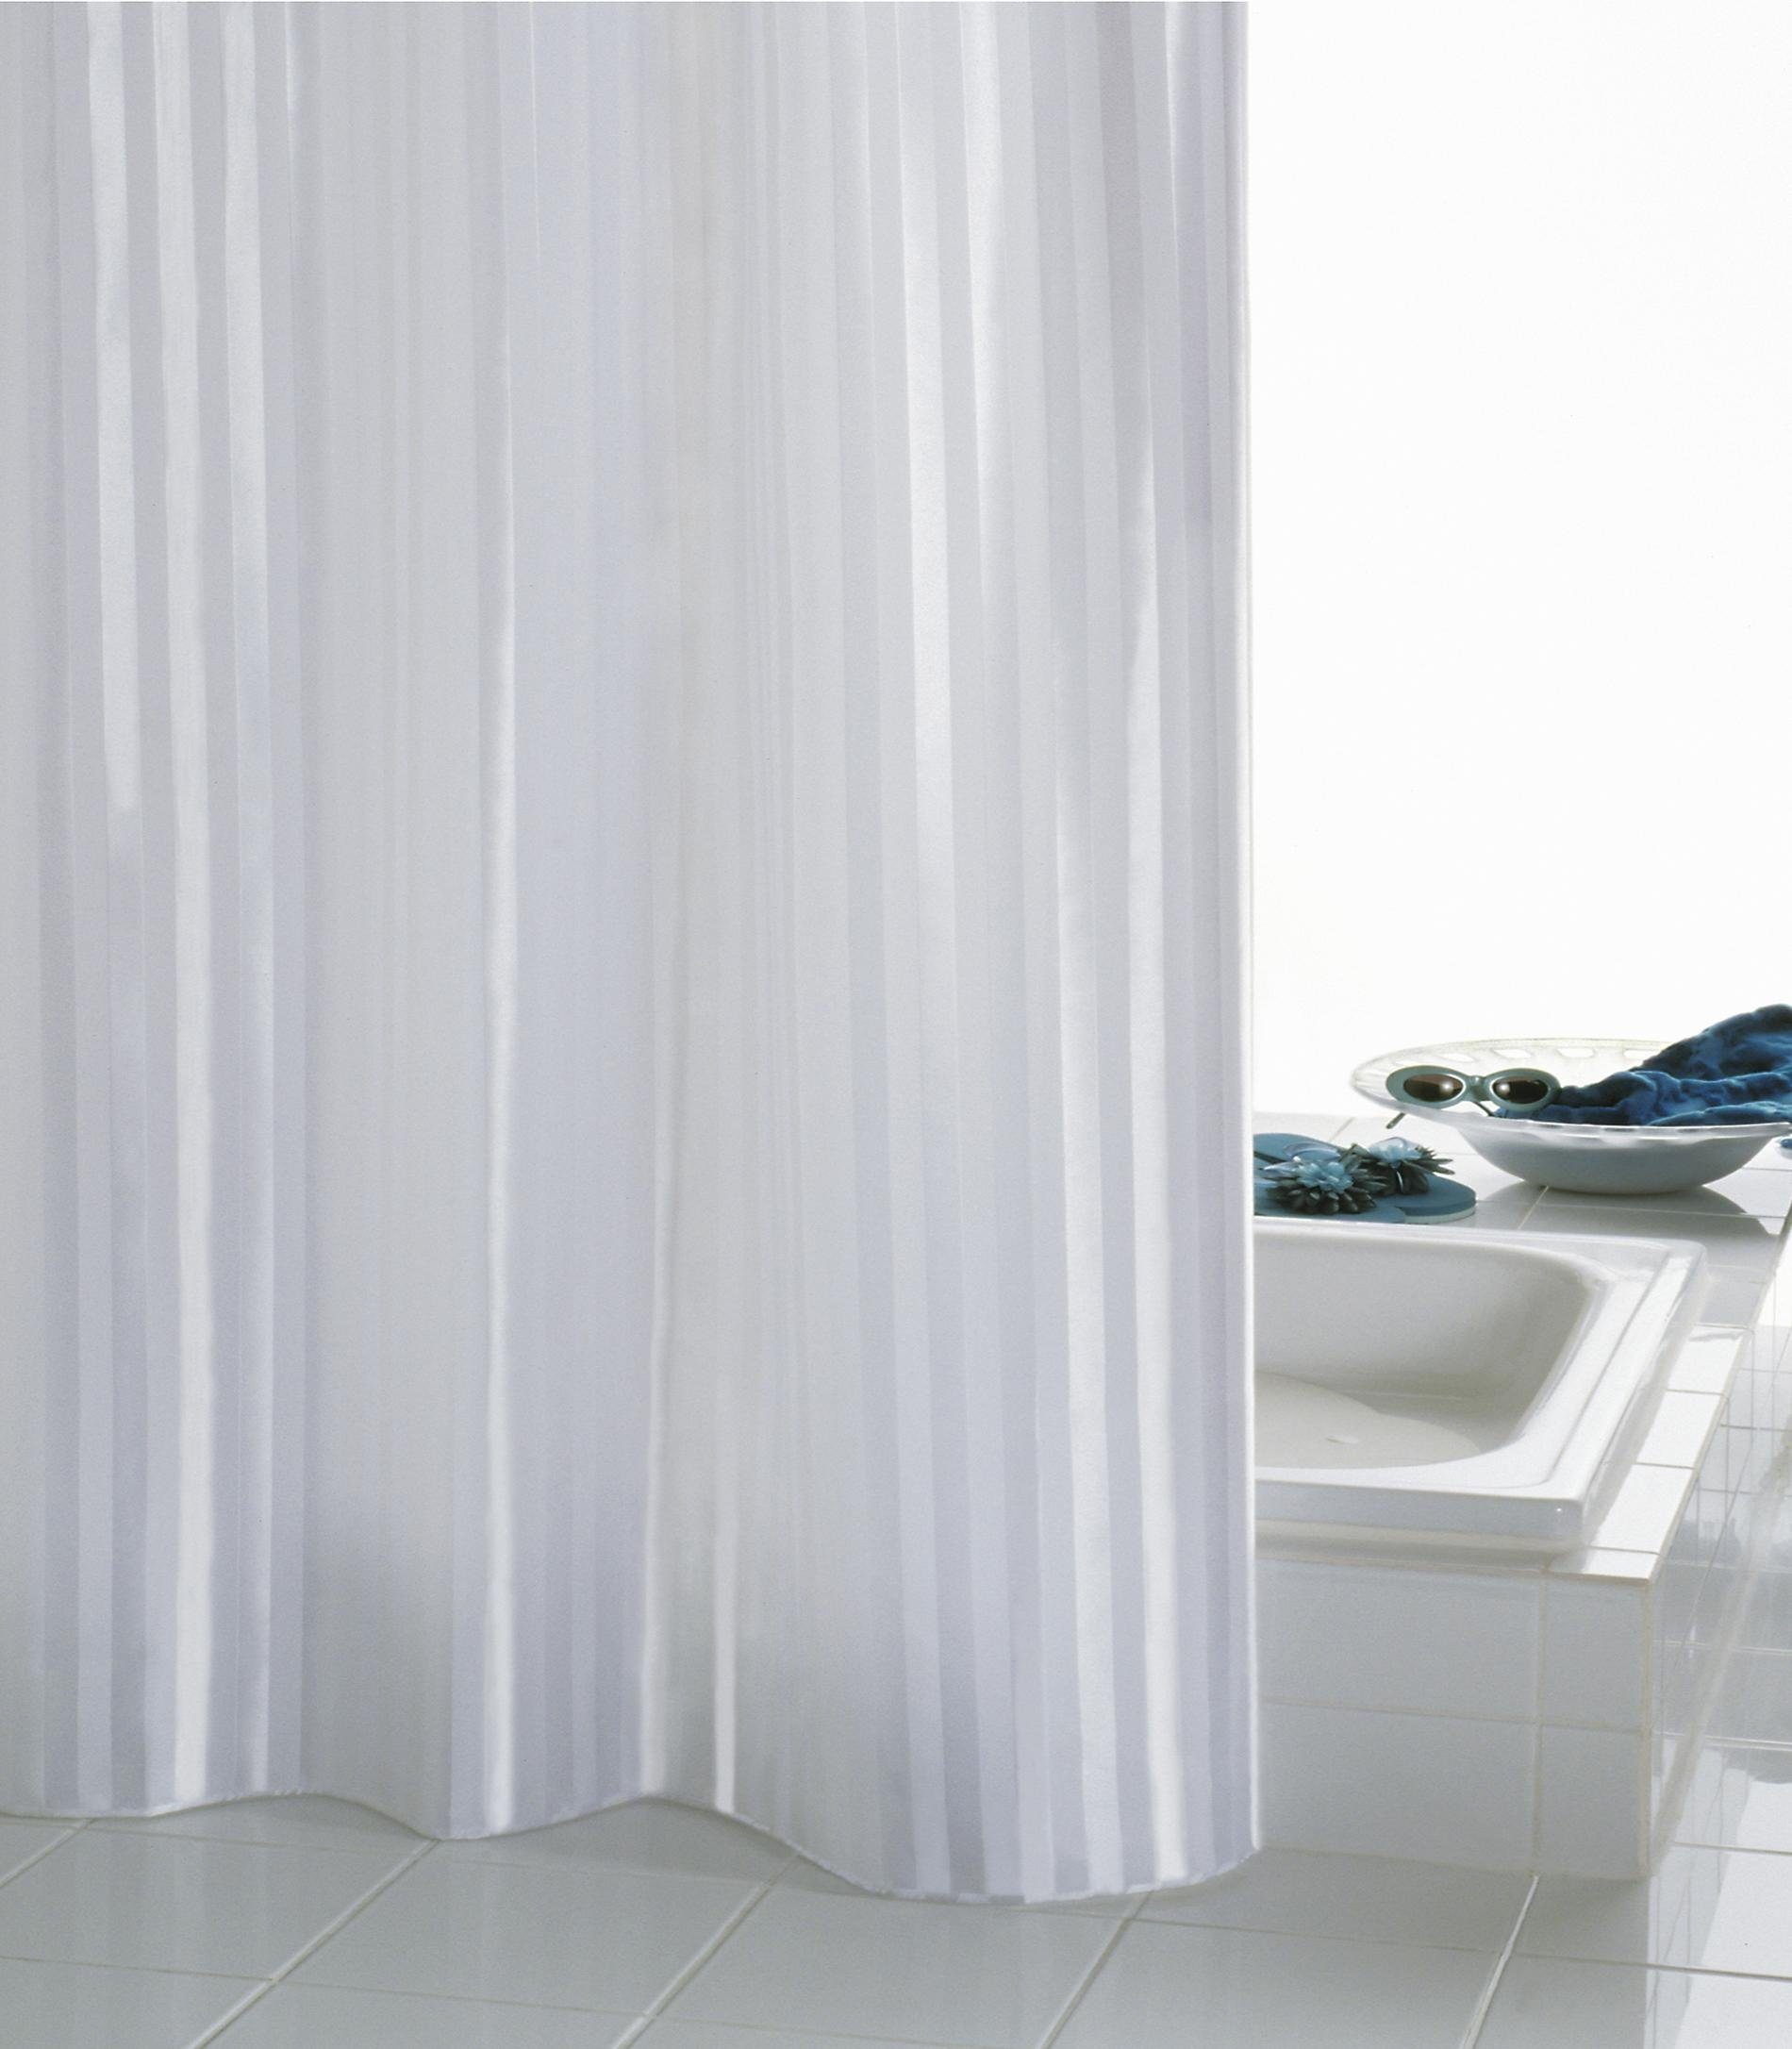 Batex Duschvorhang Duschvorhang BATEX SATIN, textil, 180 x 200 cm, weiß